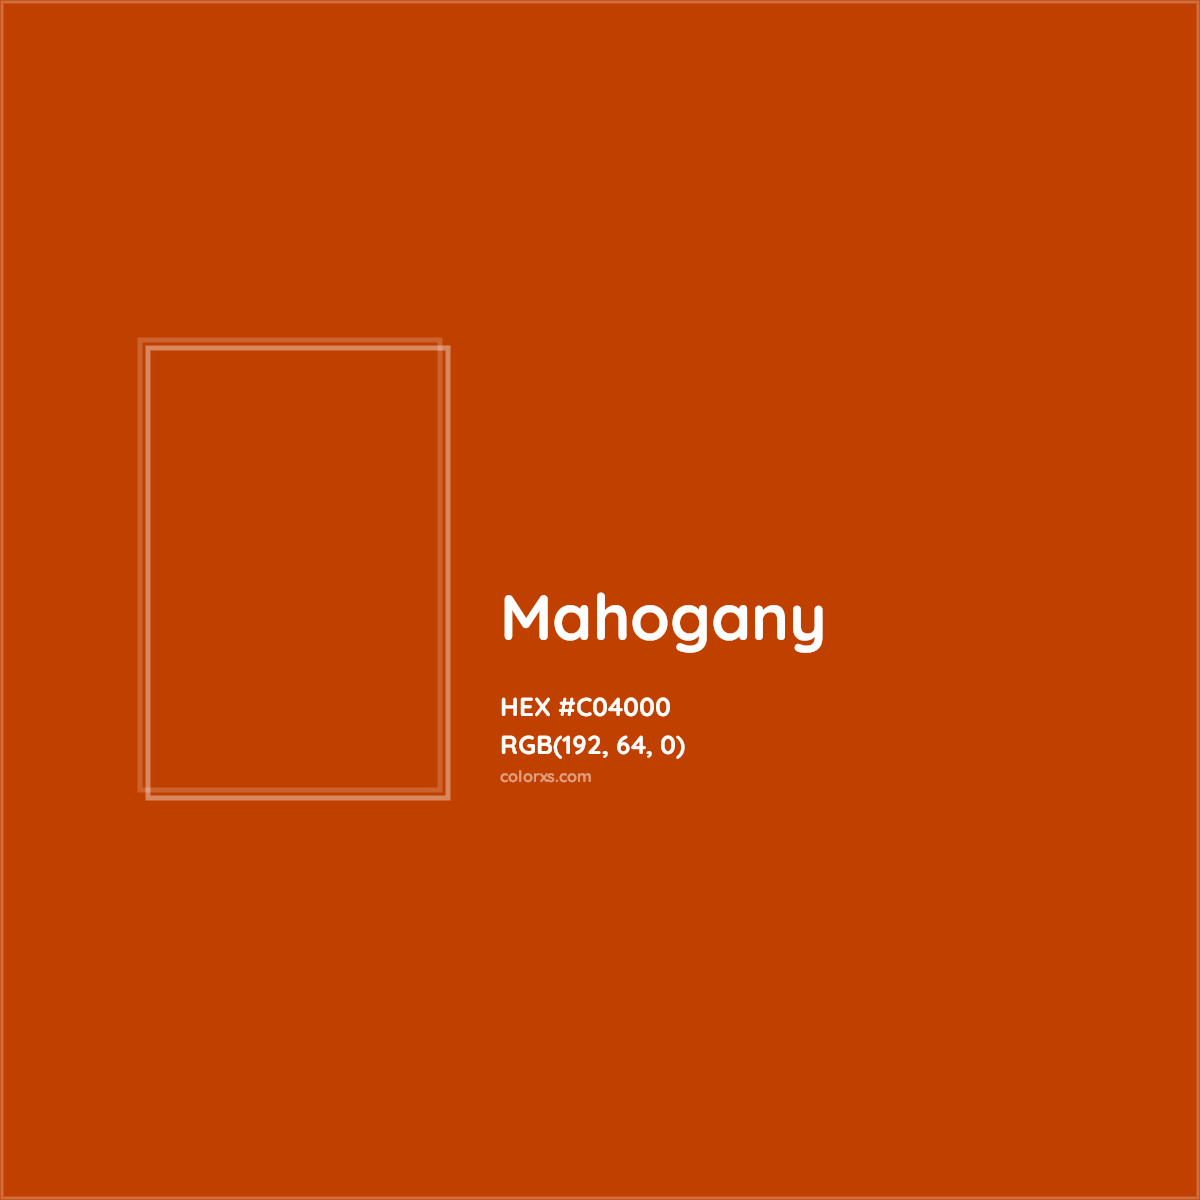 HEX #C04000 Mahogany Color - Color Code